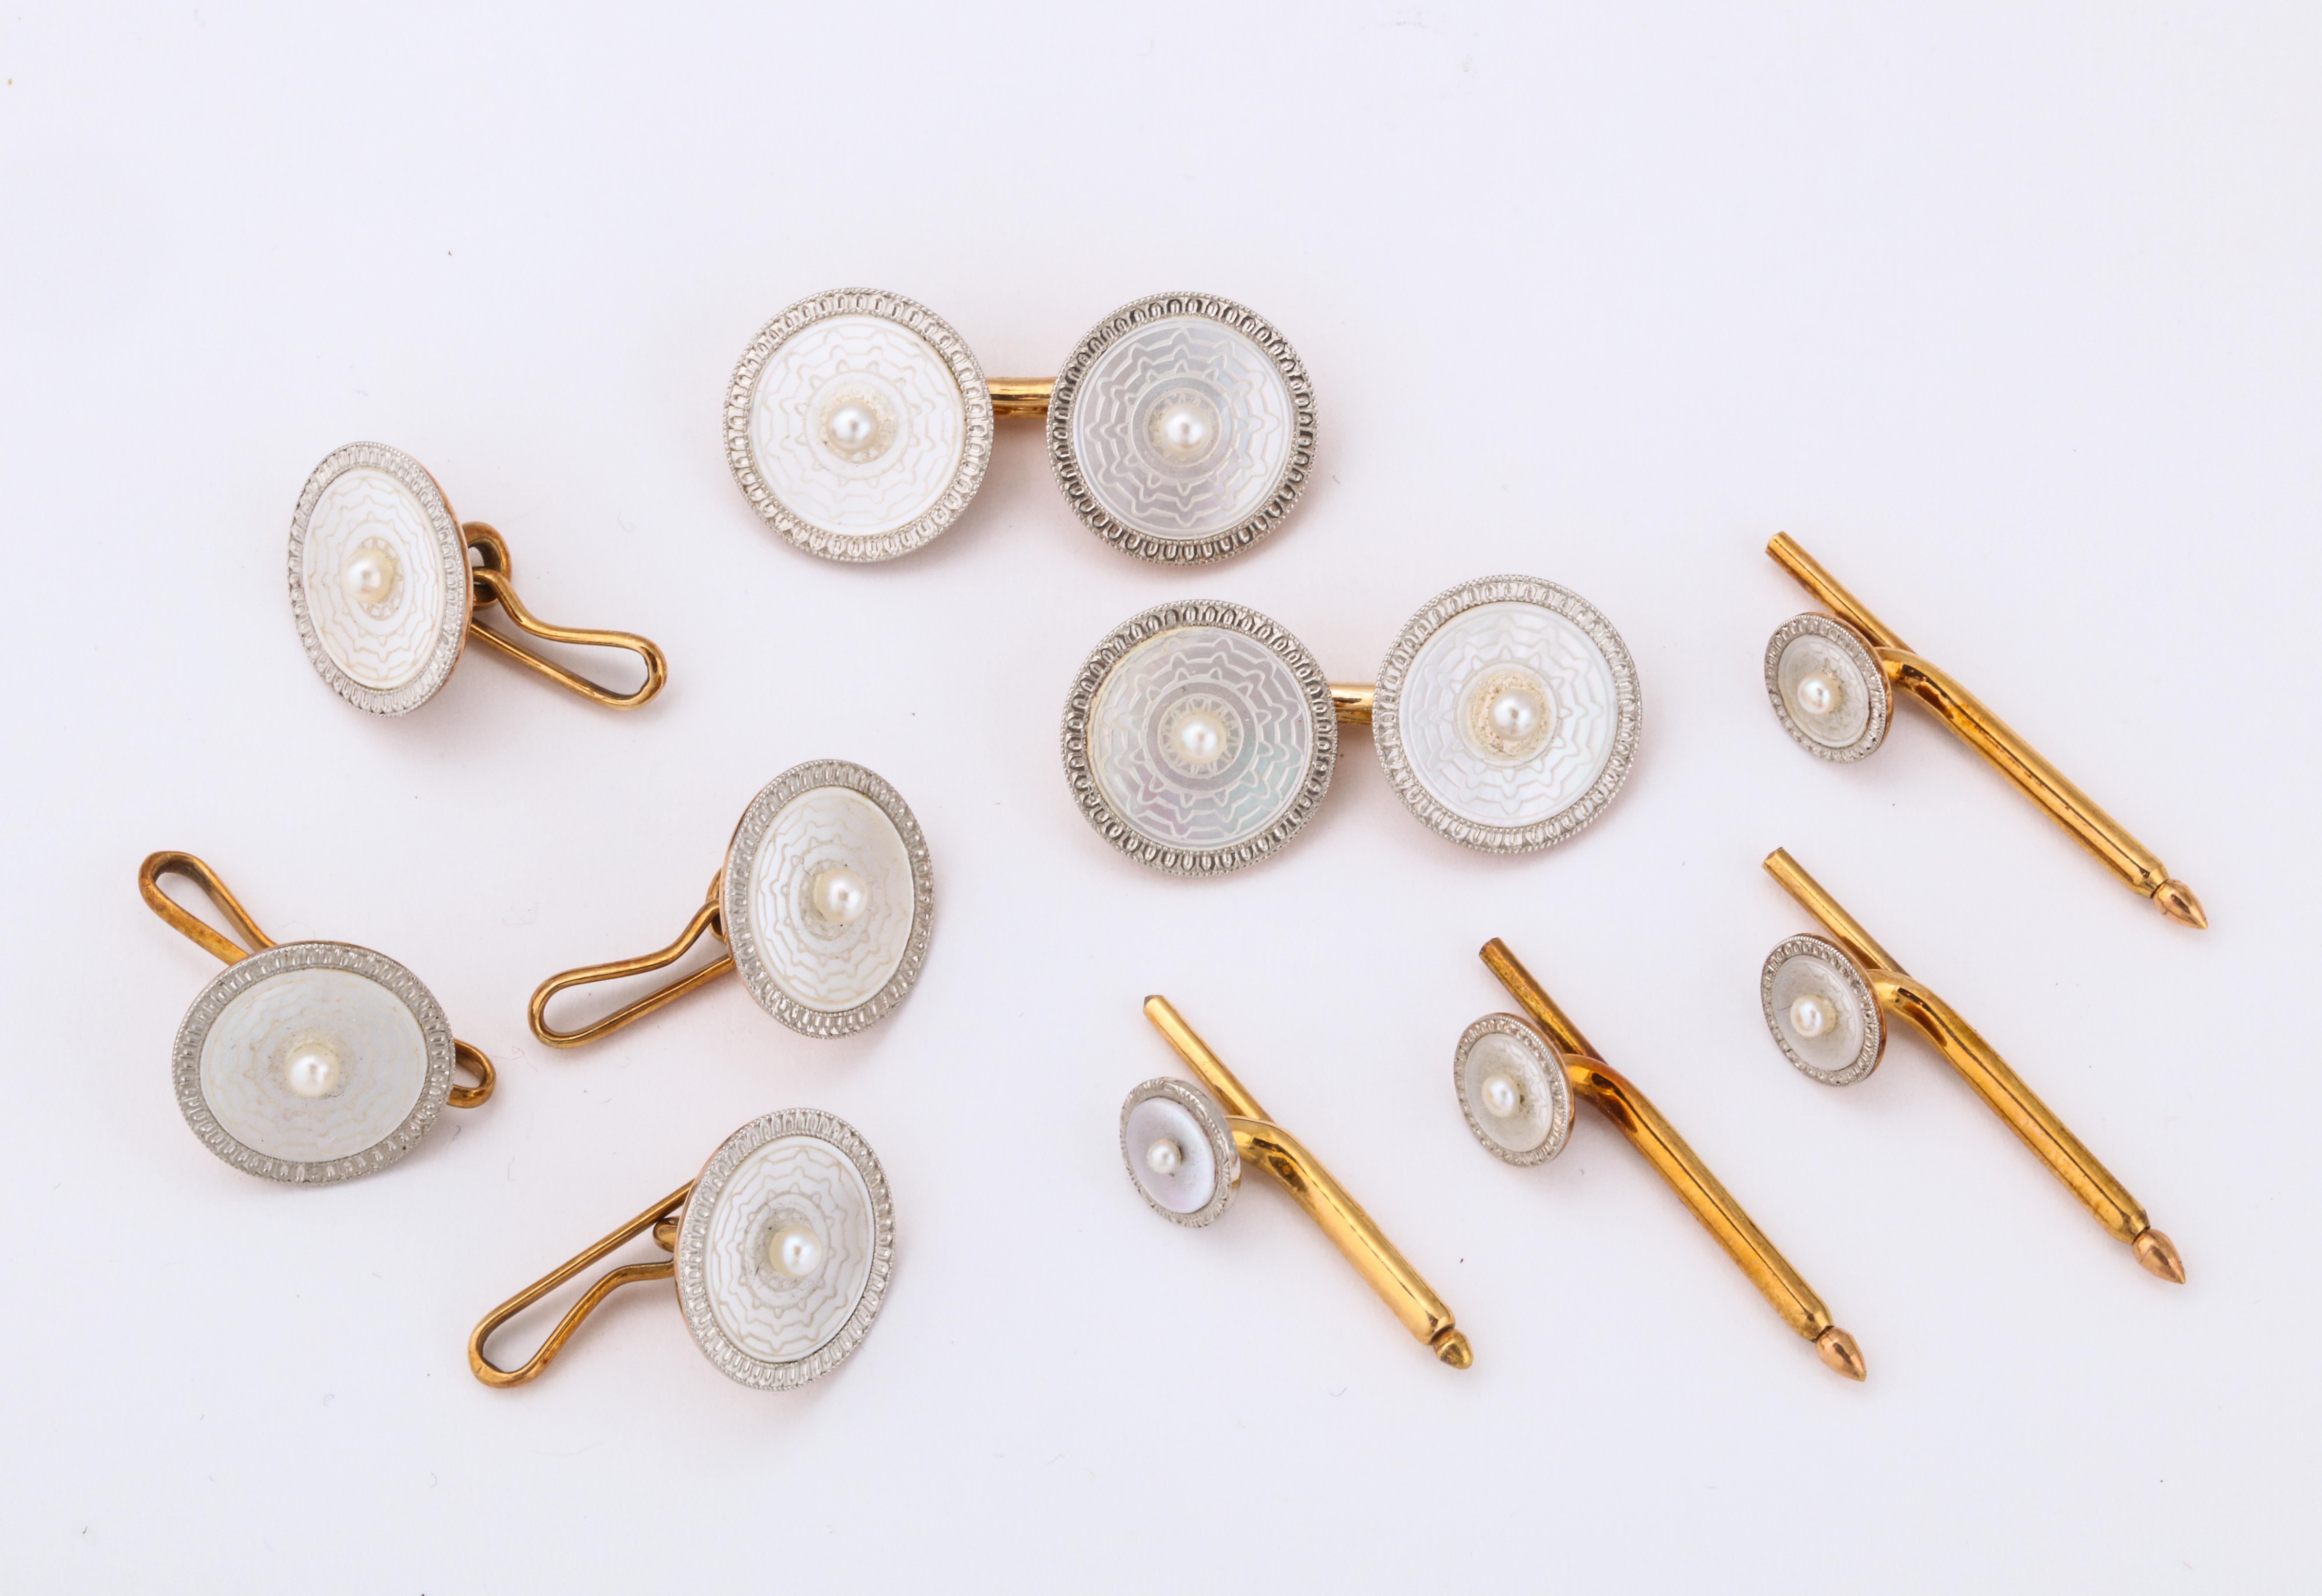 Manschettenknöpfe aus Perlmutt, Perlenkernen und Diamanten.

In Gold und Platin gefasst

Hergestellt um 1920